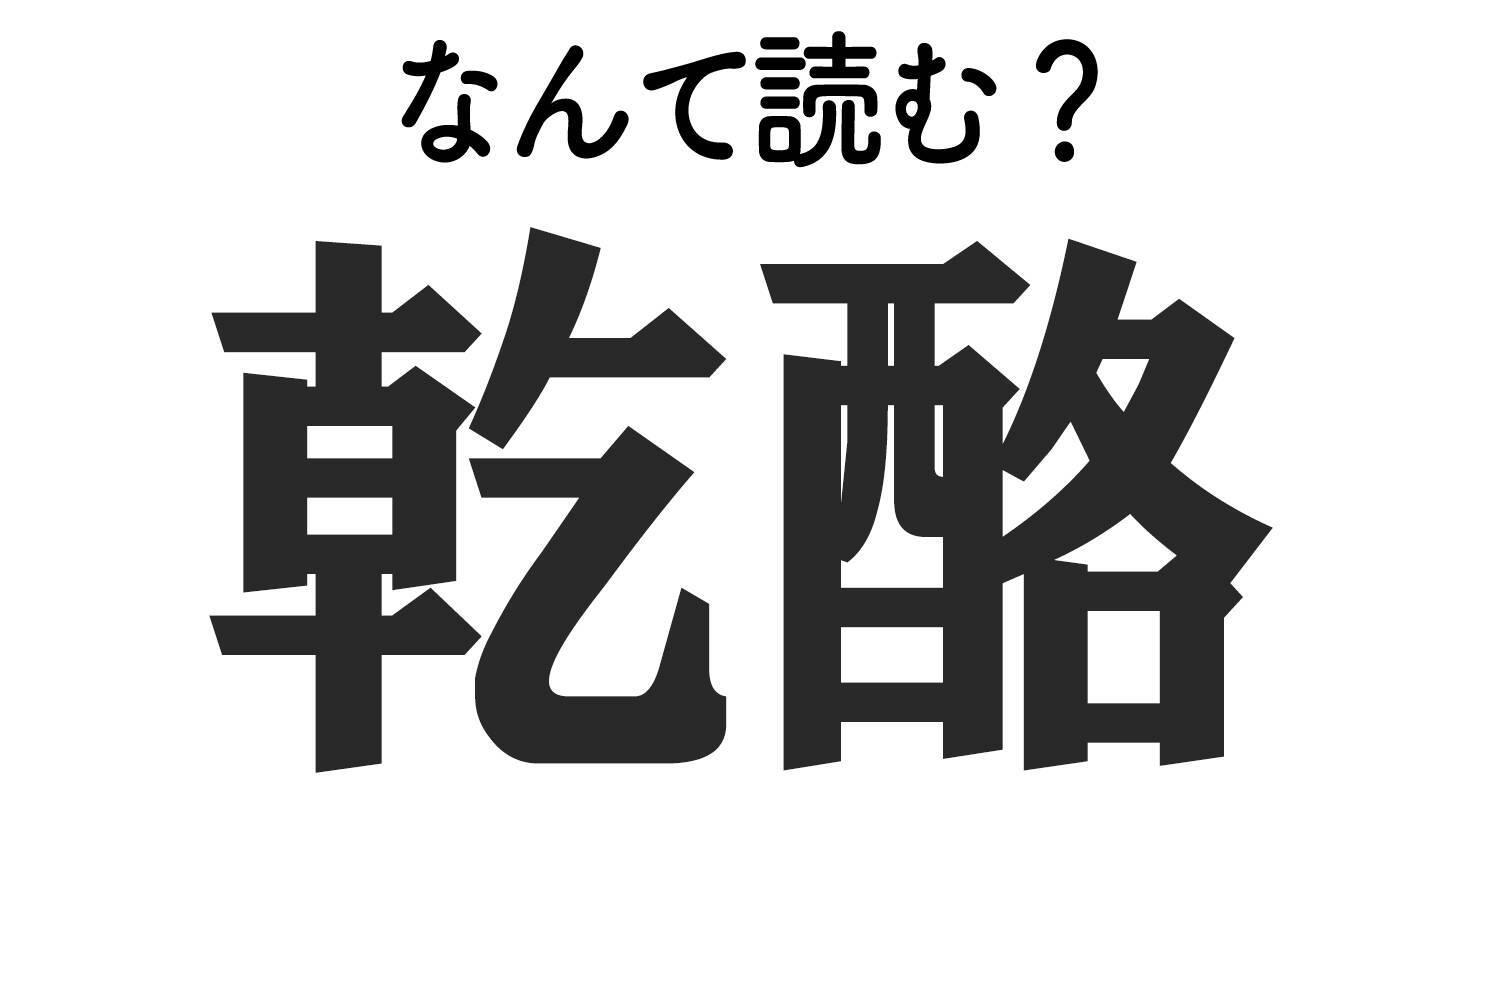 乾酪 はなんて読む 難読漢字クイズ 19年12月21日 エキサイトニュース